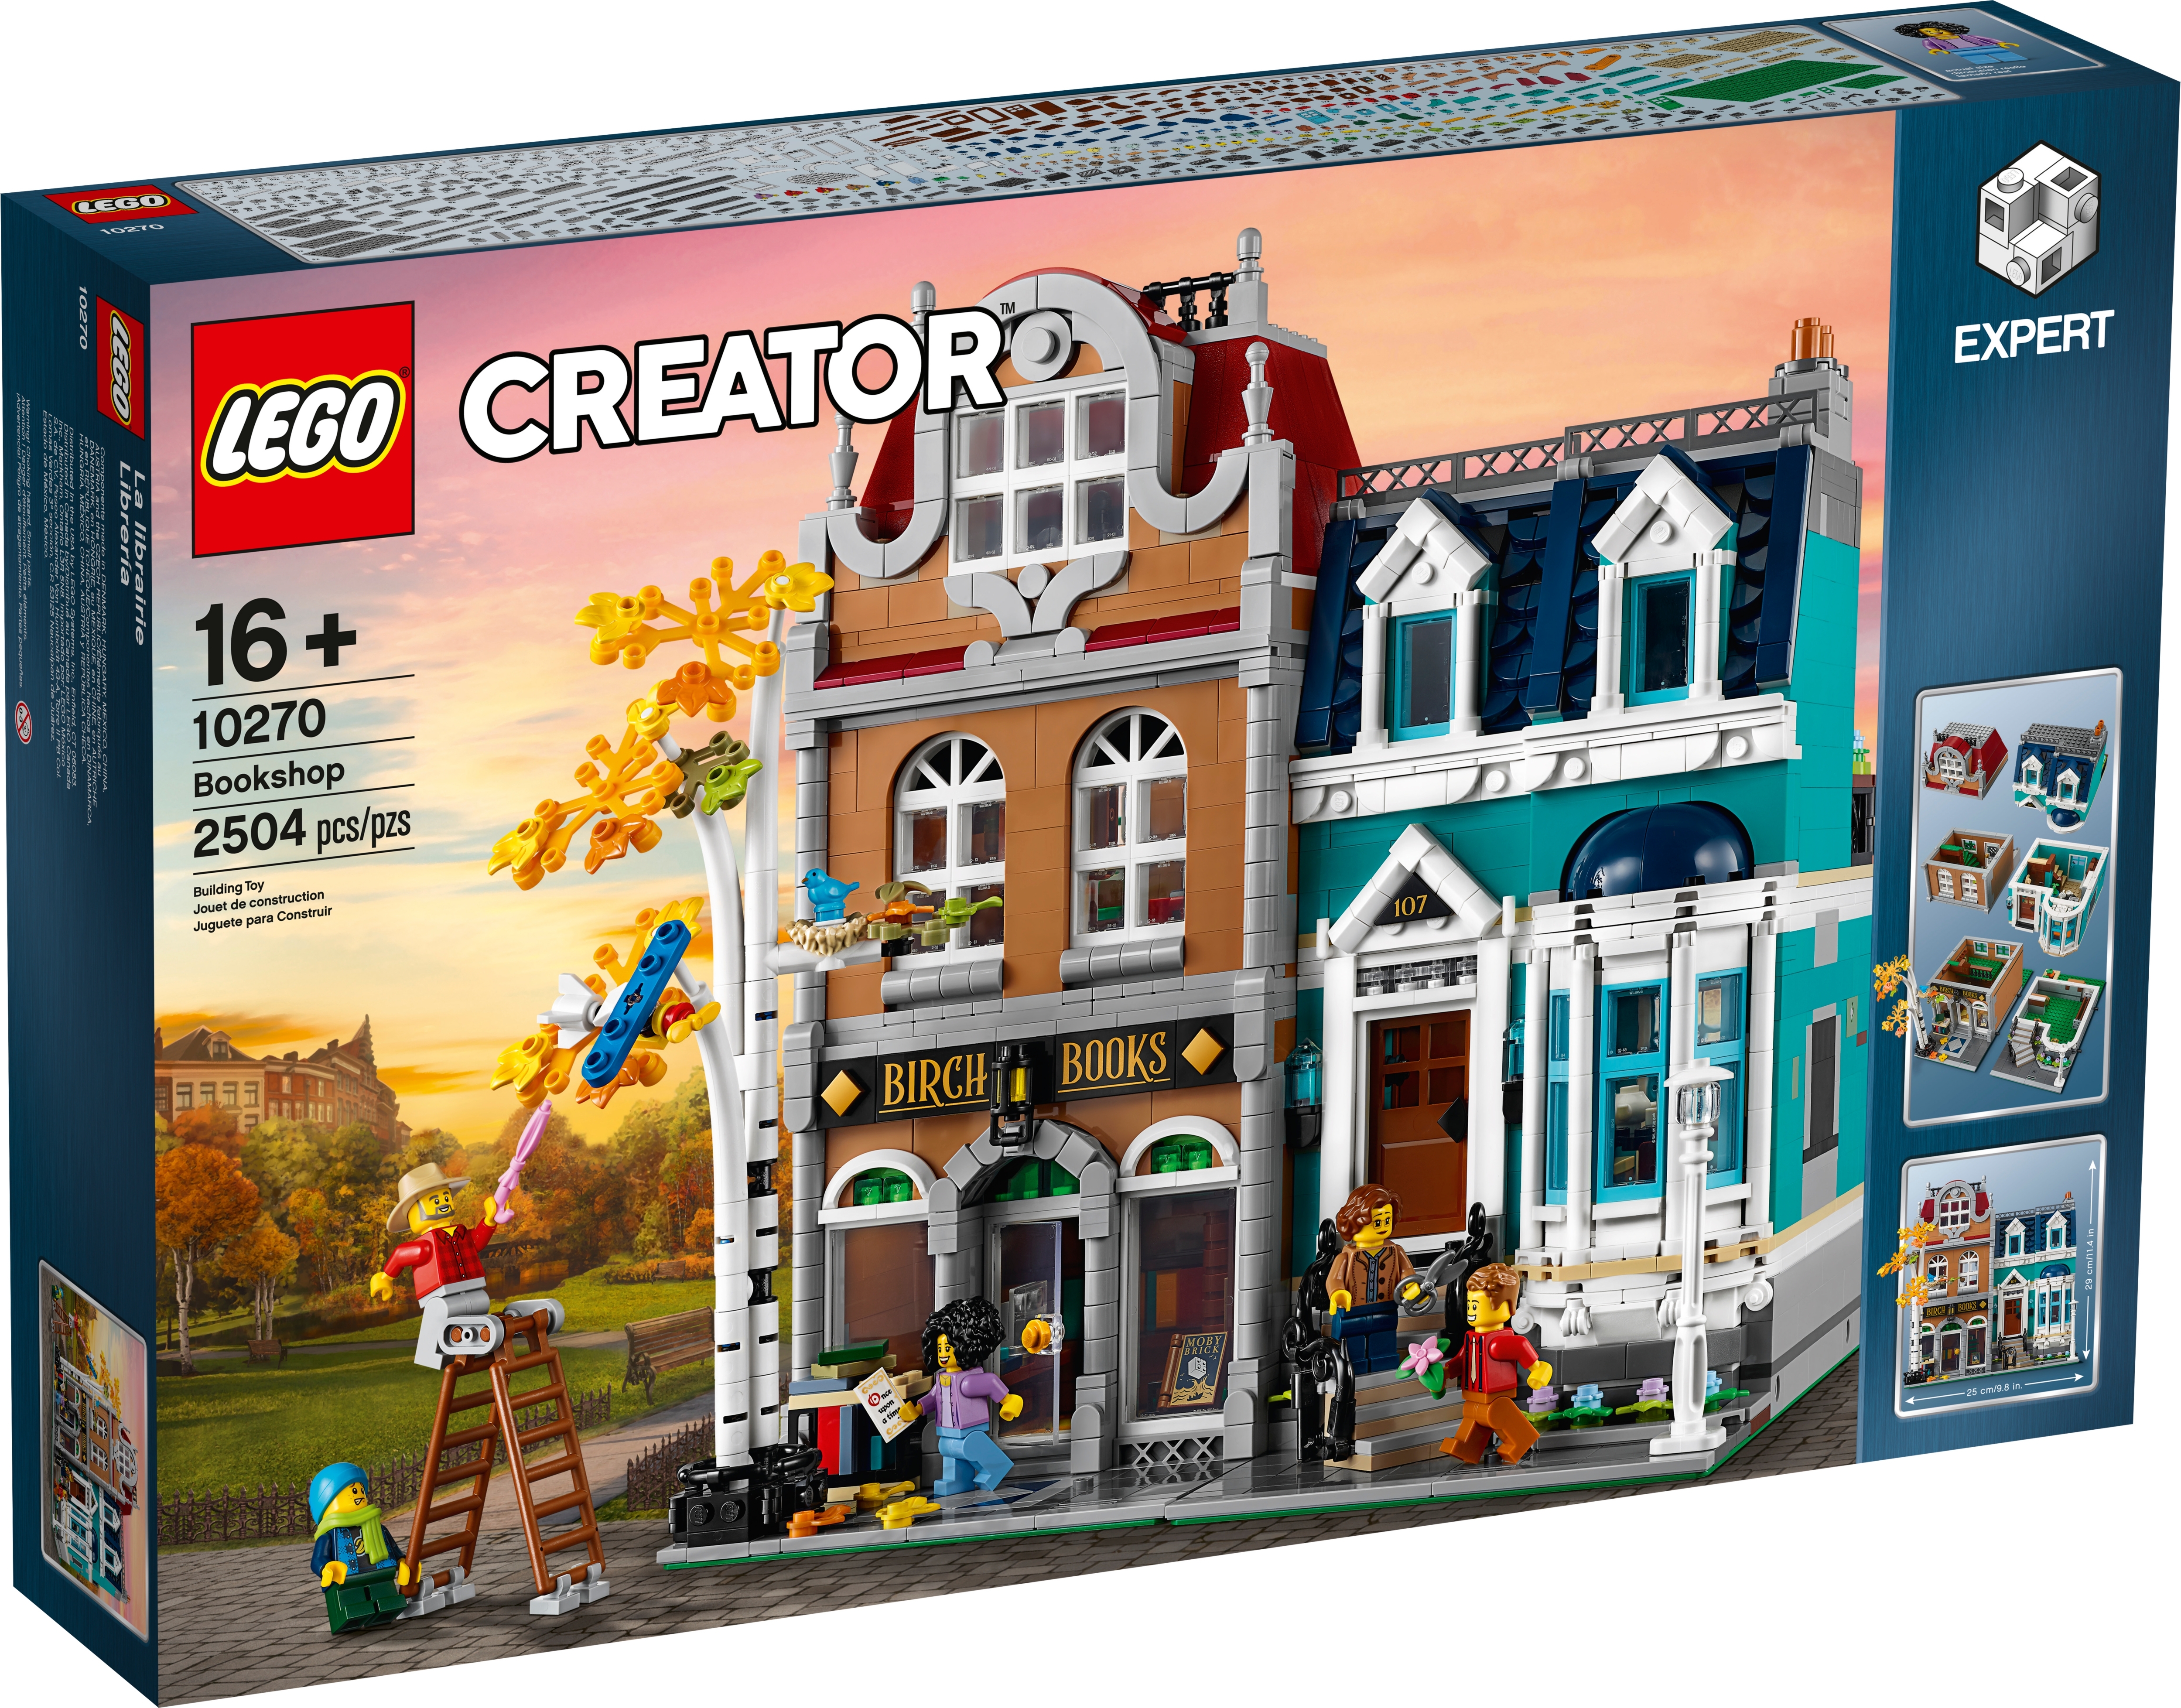 Sellado! 2504 piezas totalmente Nuevo Lego 10270 creator expert Librería